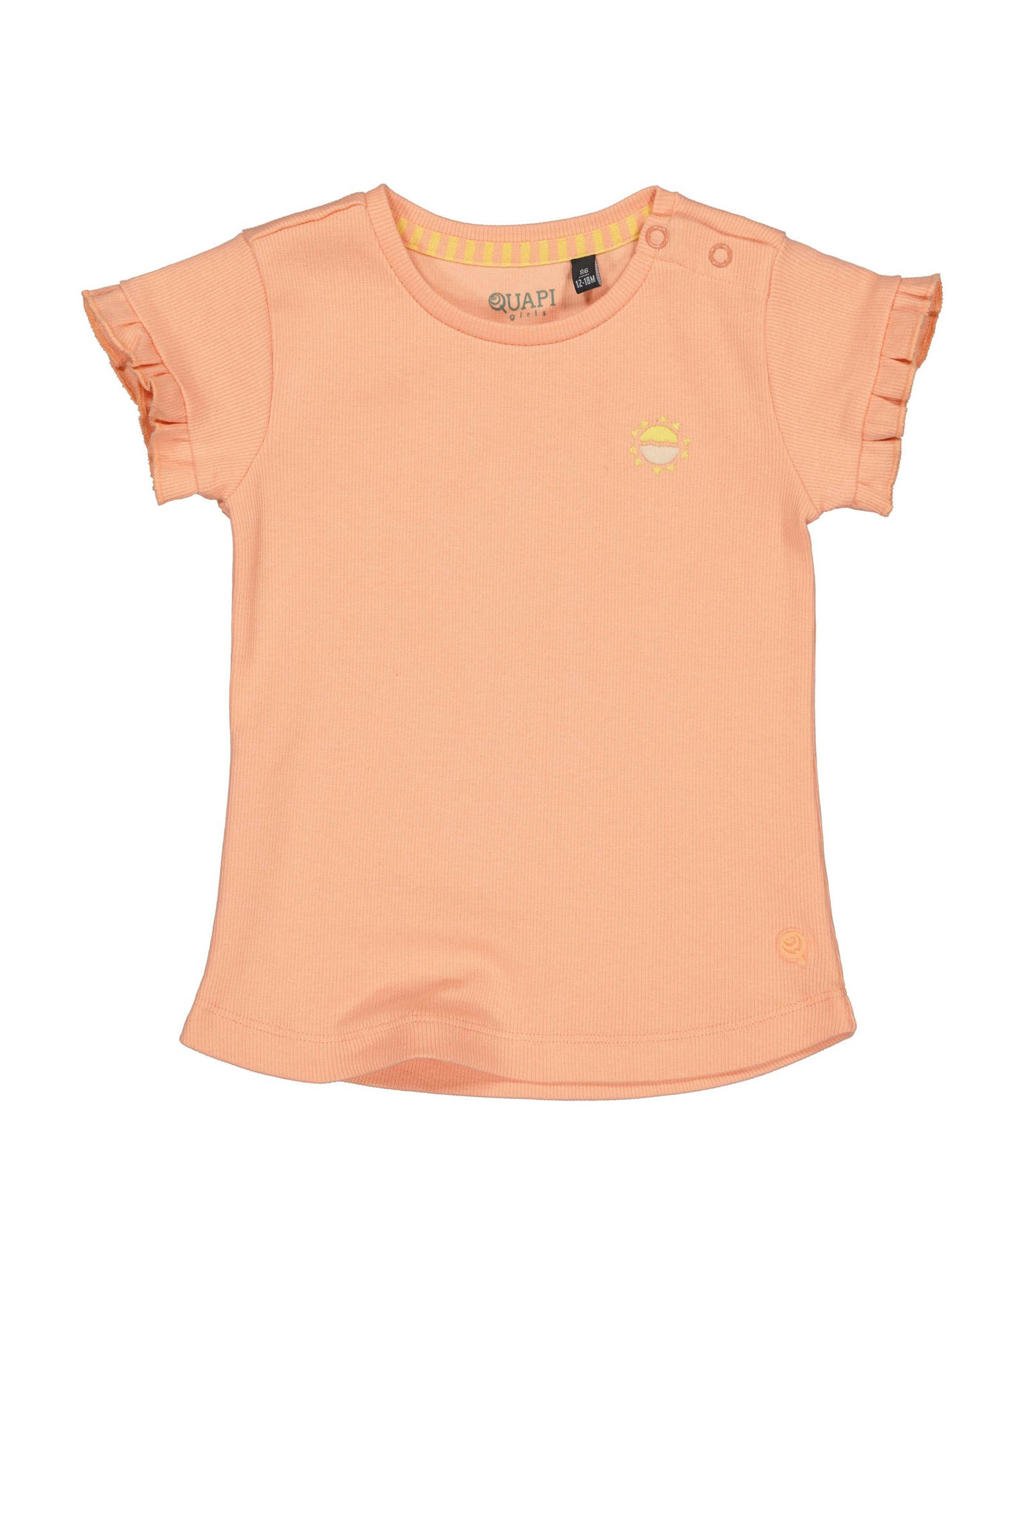 Oranje meisjes Quapi T-shirt van stretchkatoen met korte mouwen, ronde hals en ruches